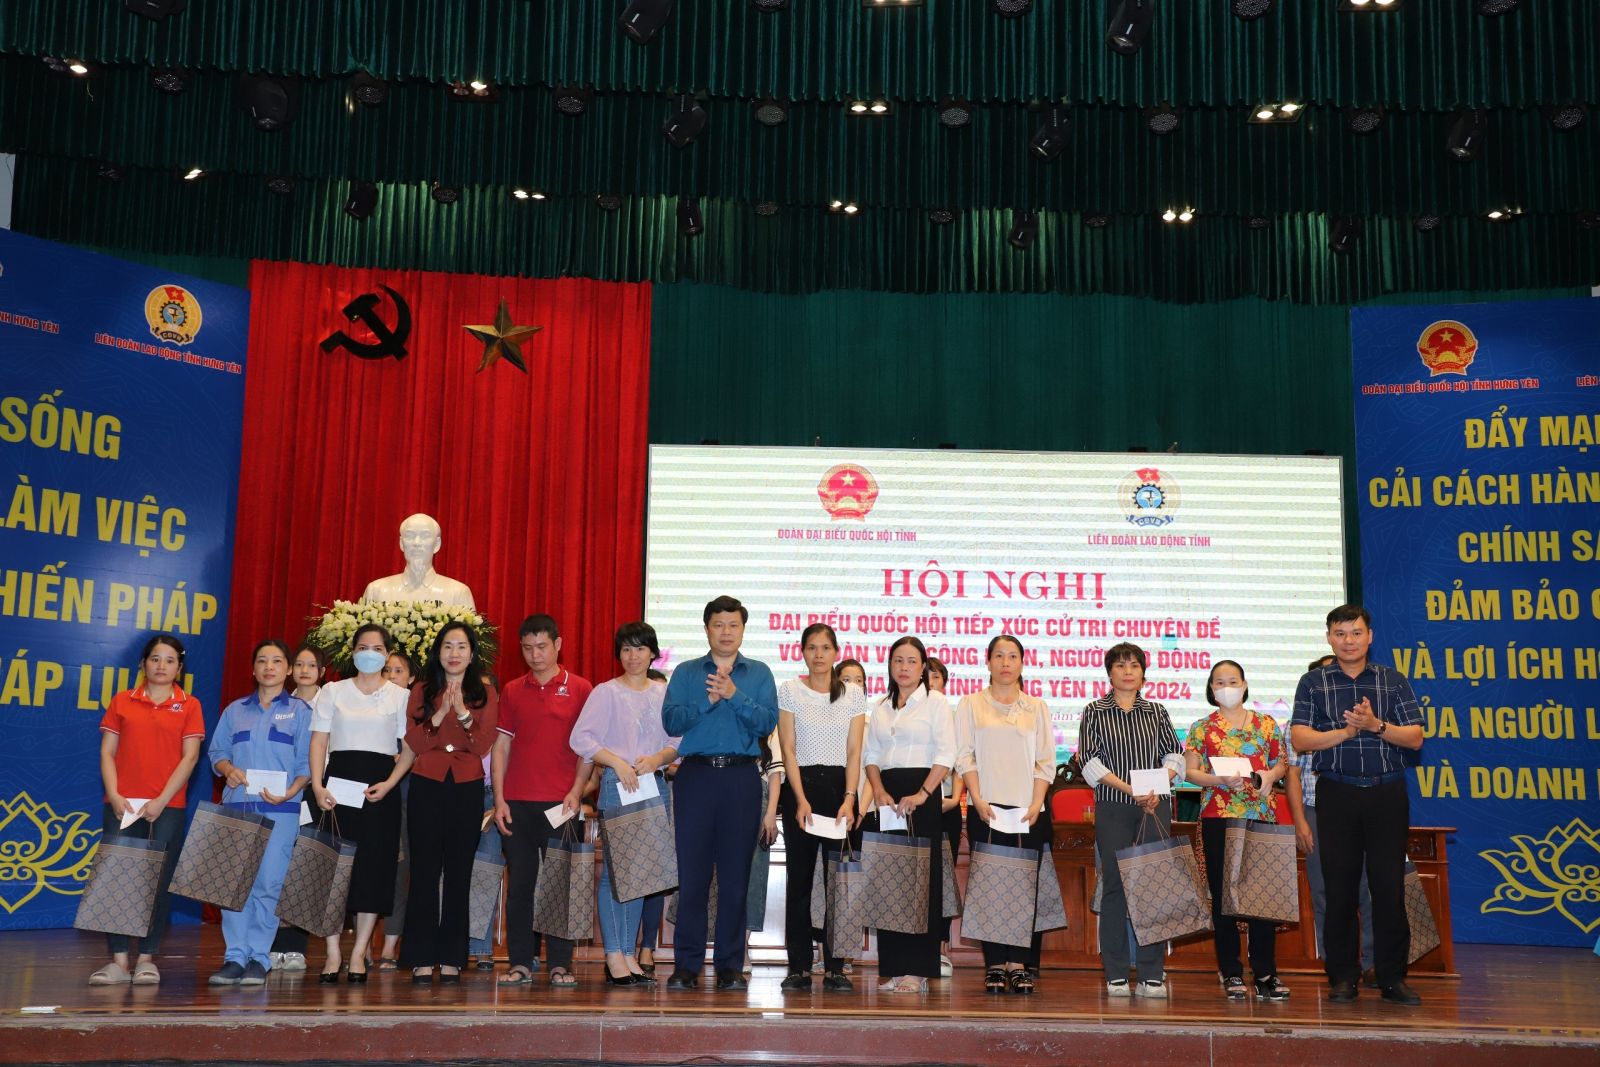 Đoàn ĐBQH tỉnh tiếp xúc cử tri chuyên đề với công nhân, người lao động tỉnh Hưng Yên